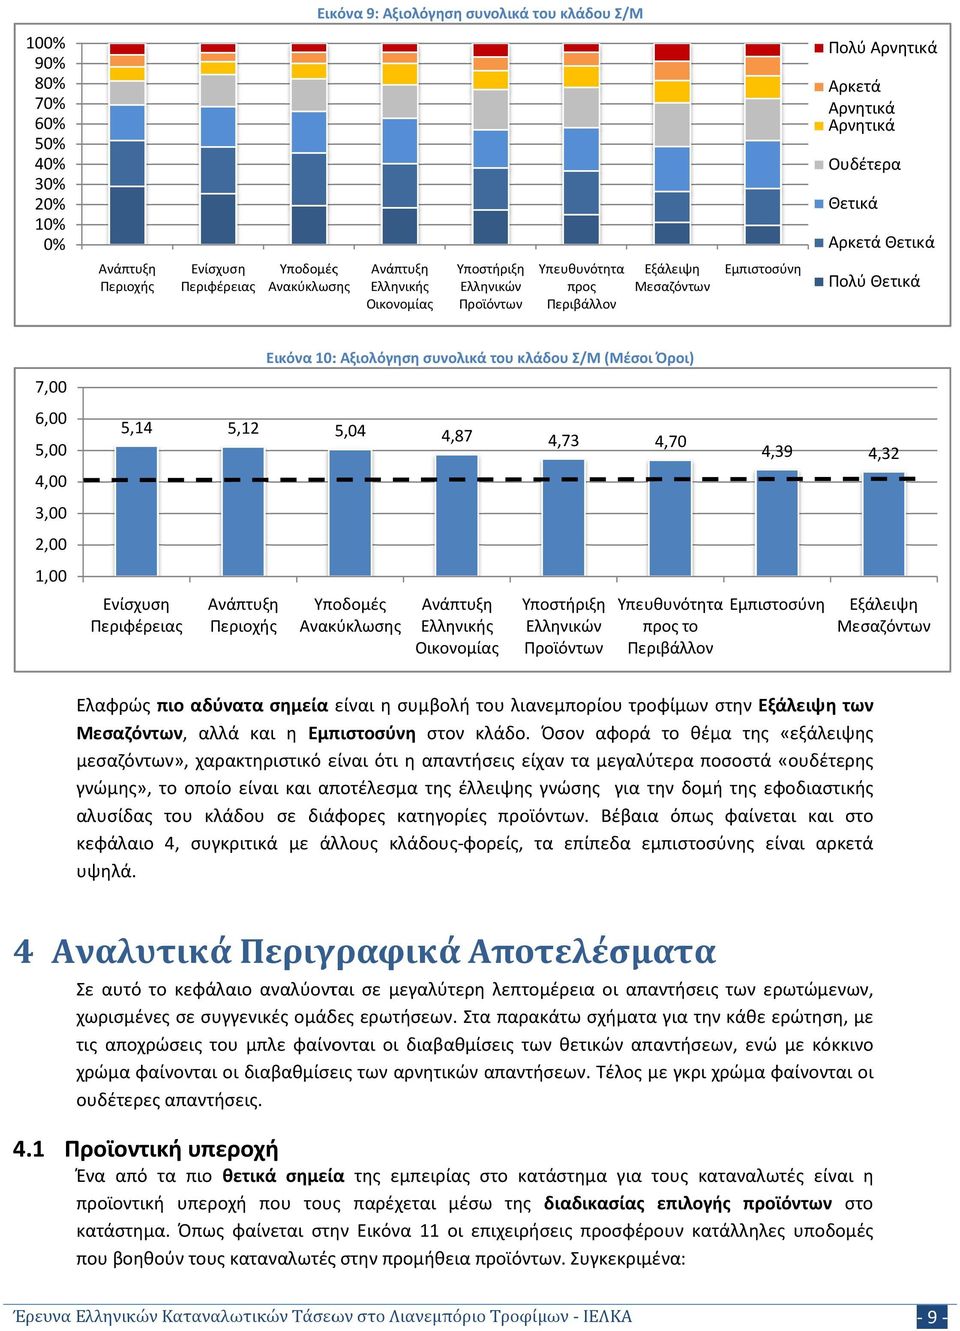 (Μέσοι Όροι) 5,04 4,87 4,73 4,70 Υποδομές Ανακύκλωσης Ανάπτυξη Ελληνικής Οικονομίας Υποστήριξη Ελληνικών Προϊόντων 4,39 4,32 Υπευθυνότητα Εμπιστοσύνη Εξάλειψη προς το Μεσαζόντων Περιβάλλον Ελαφρώς